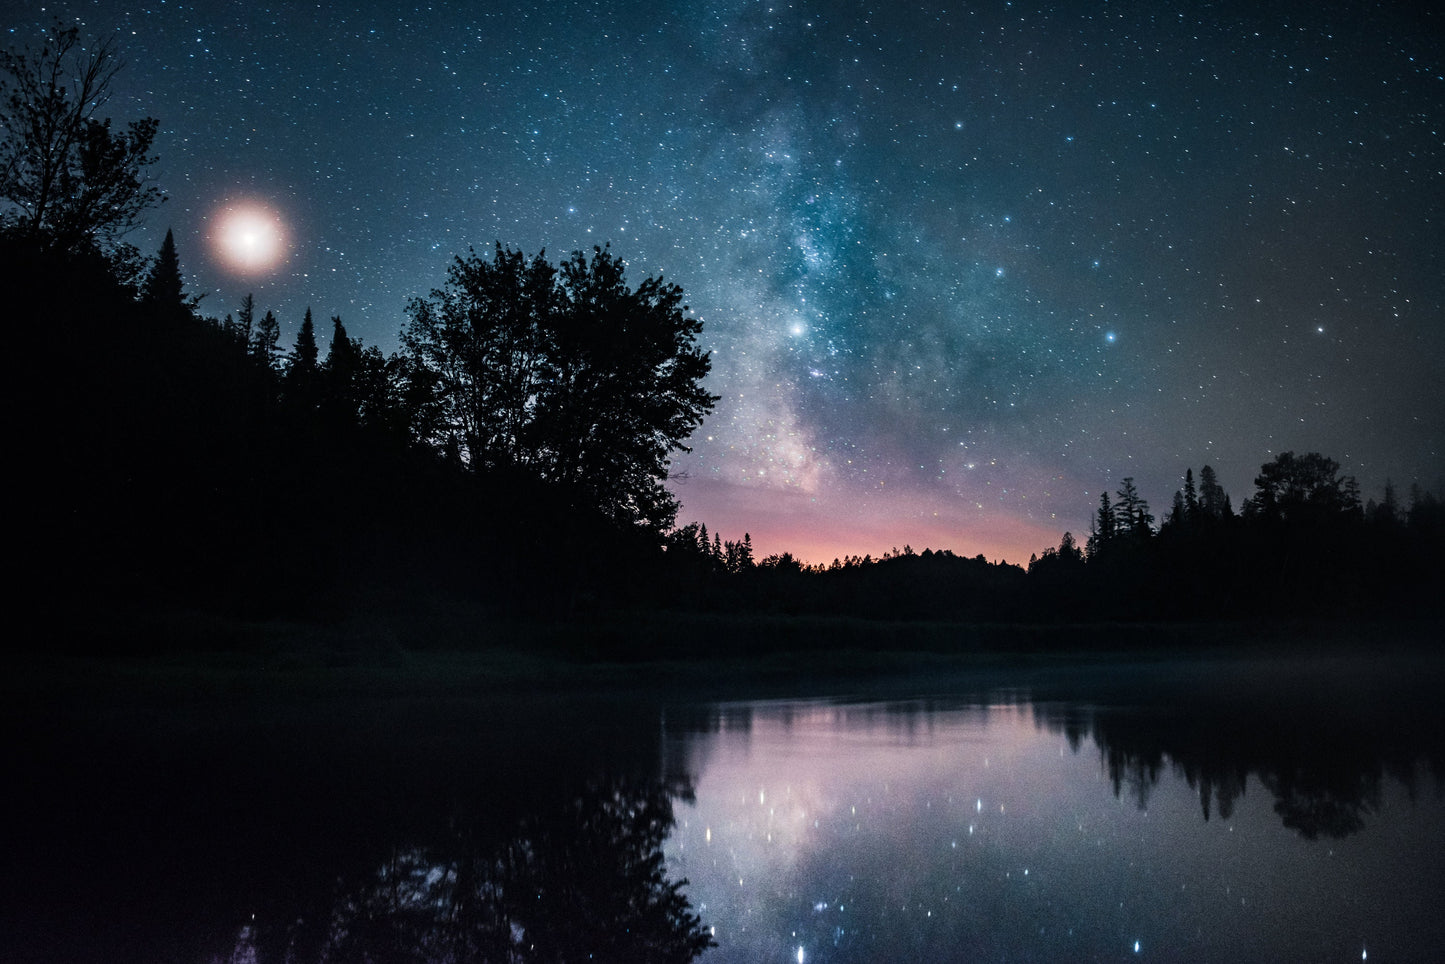 Milky Way and Moose Pond - Adirondacks, NY